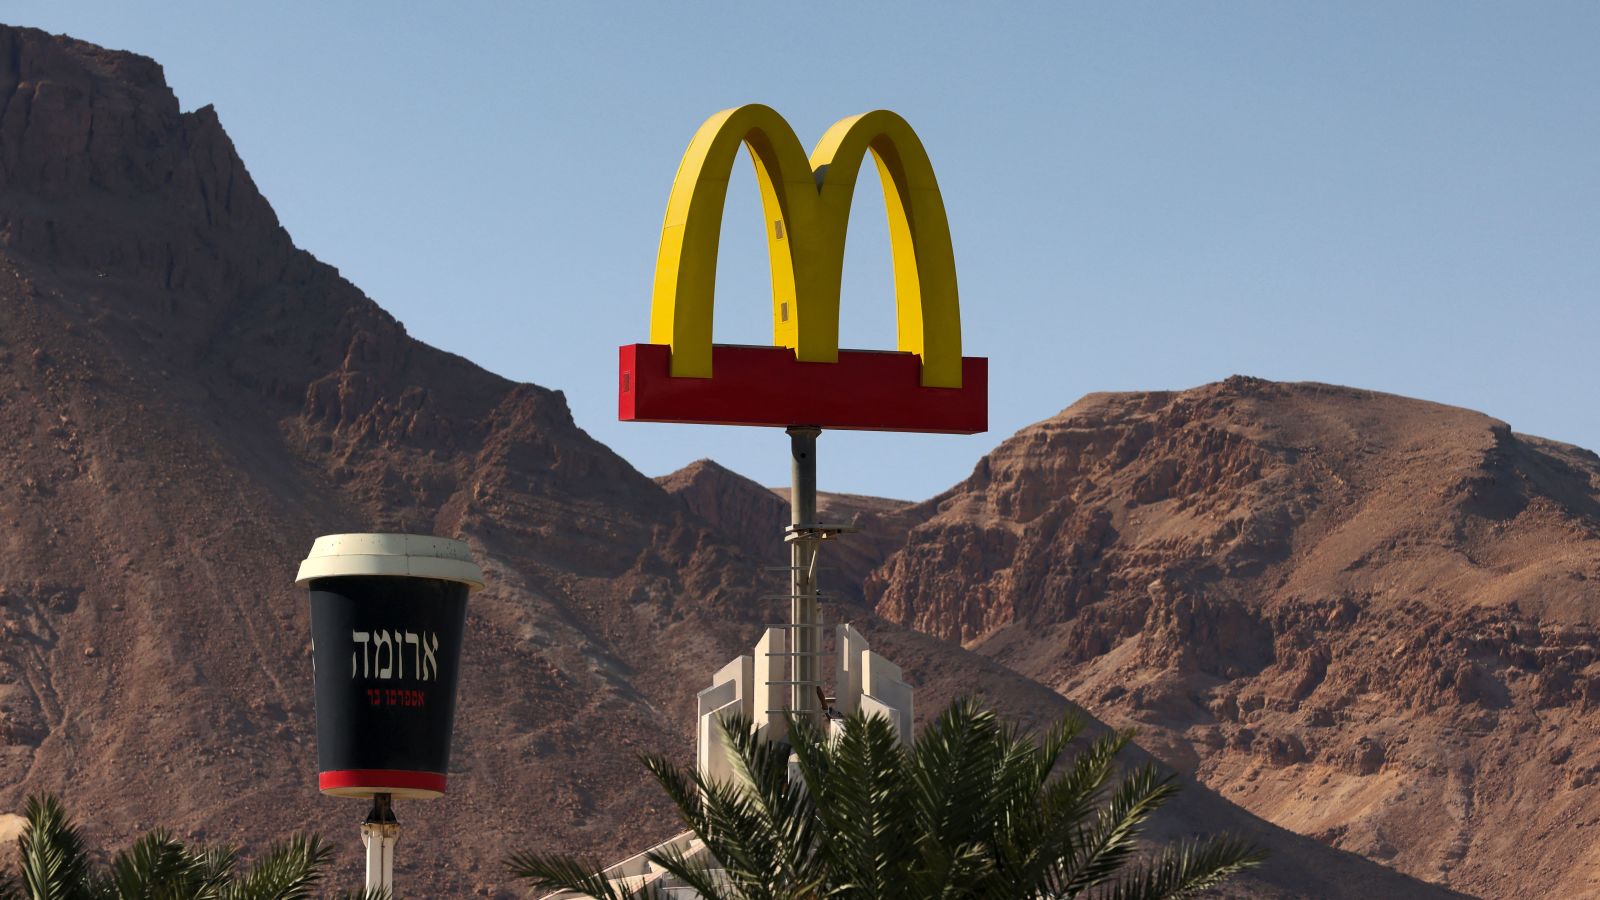 McDonald's compra todas sus franquicias de restaurantes en Israel,
luego de decir que la guerra afecta su negocio